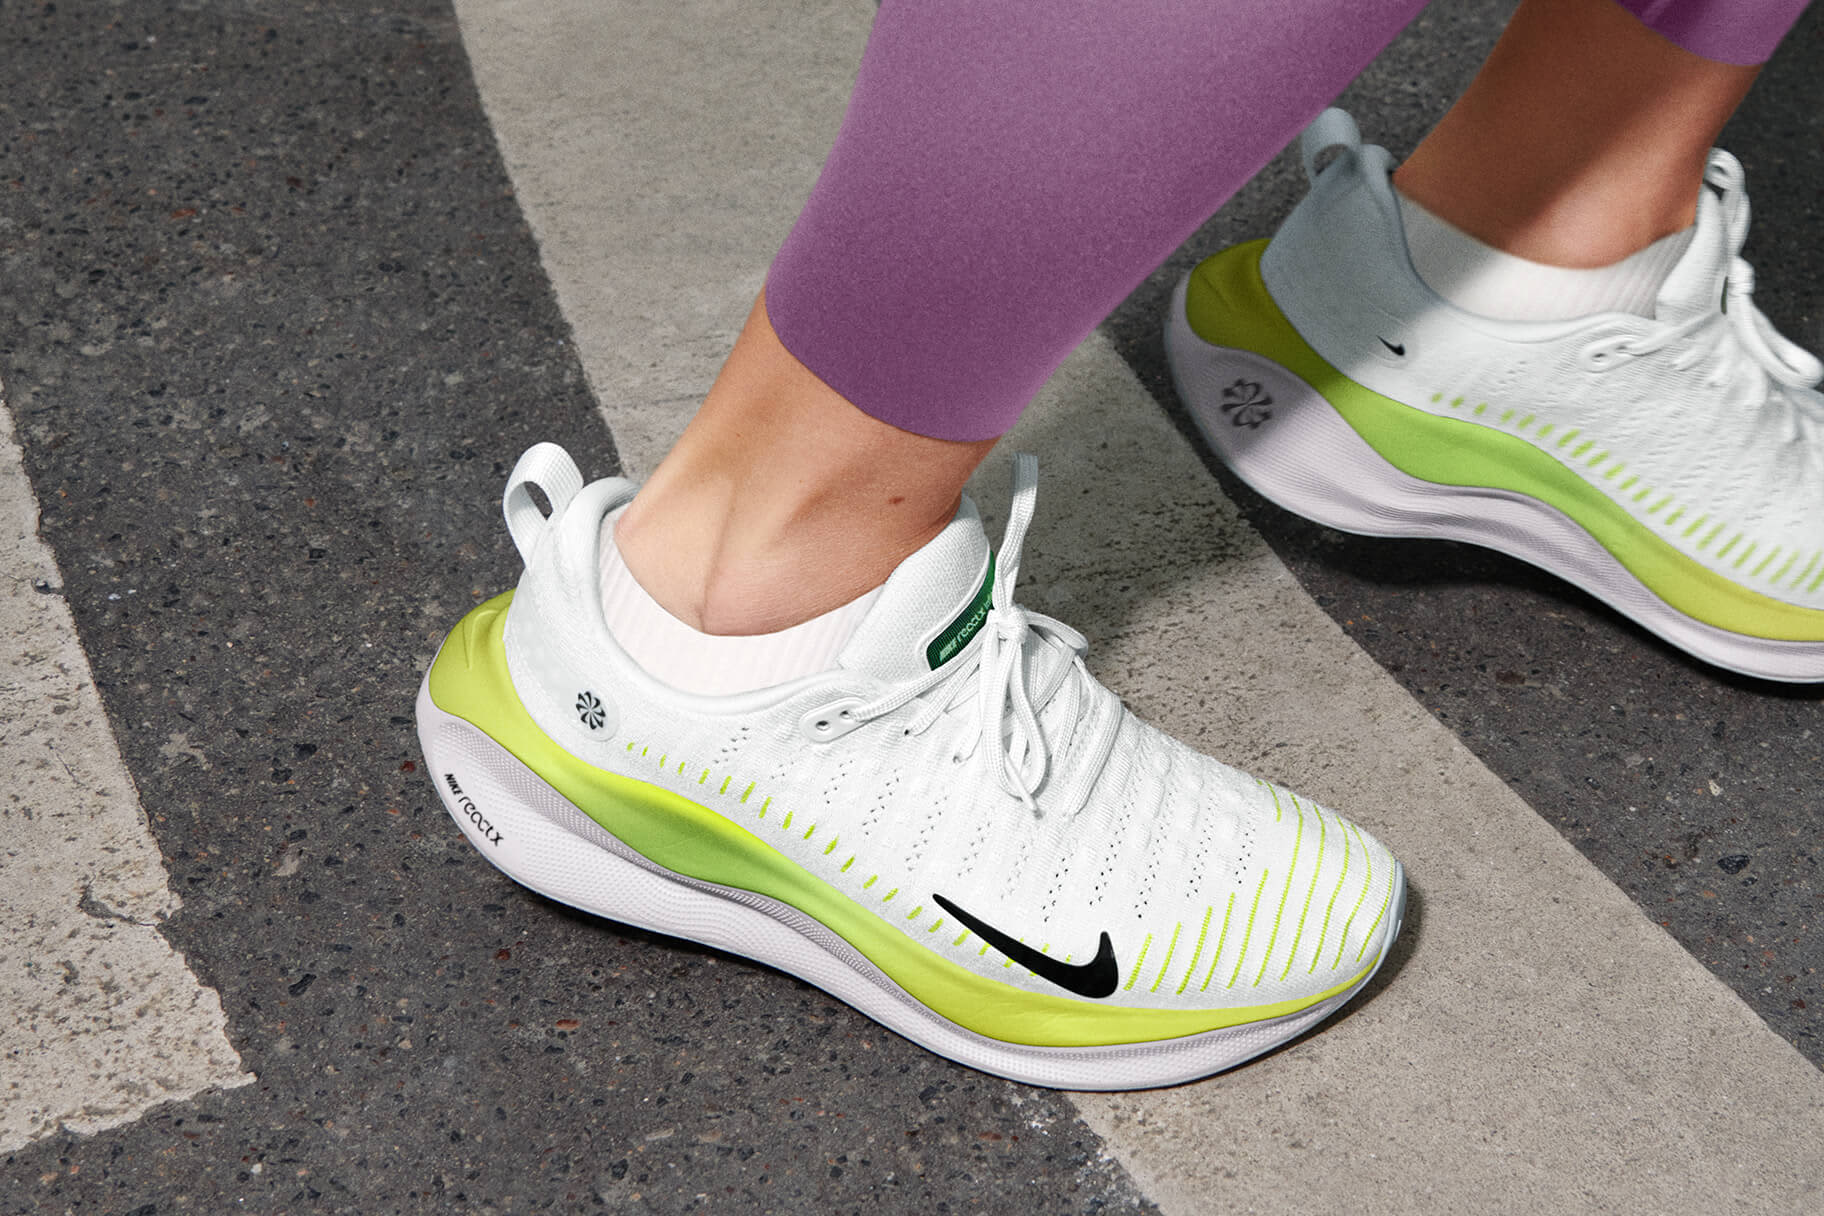 Nike introduceert ReactX technologie om energieteruggave te optimaliseren en de CO2-voetafdruk te verkleinen